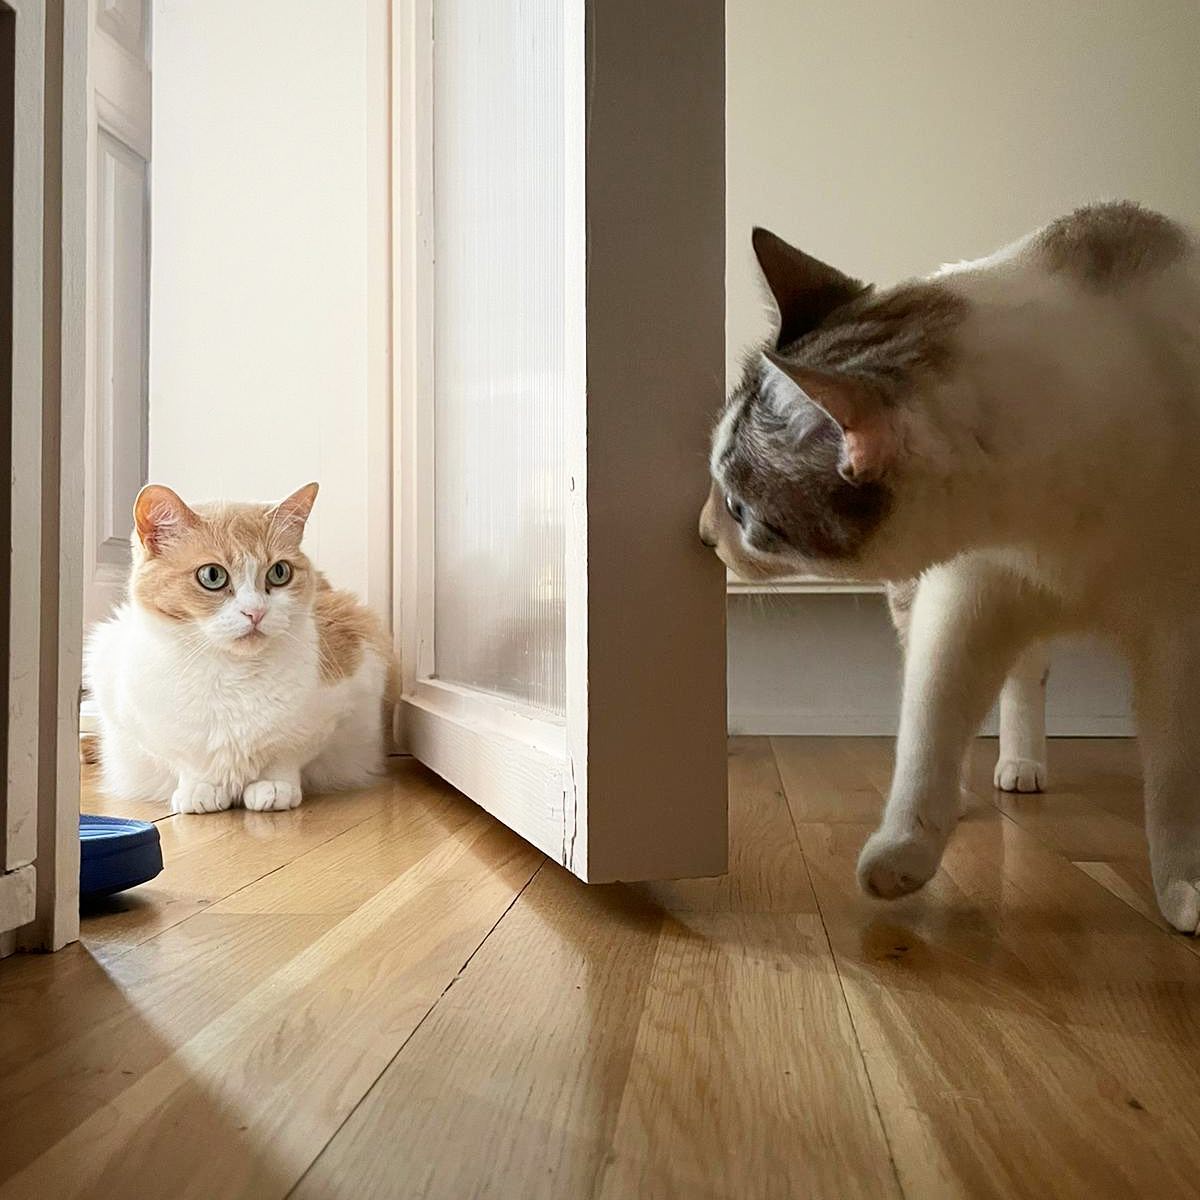 Pedro Zuazua: “Los que vivimos con gatos tenemos la manía de trasladarles cualidades humanas”